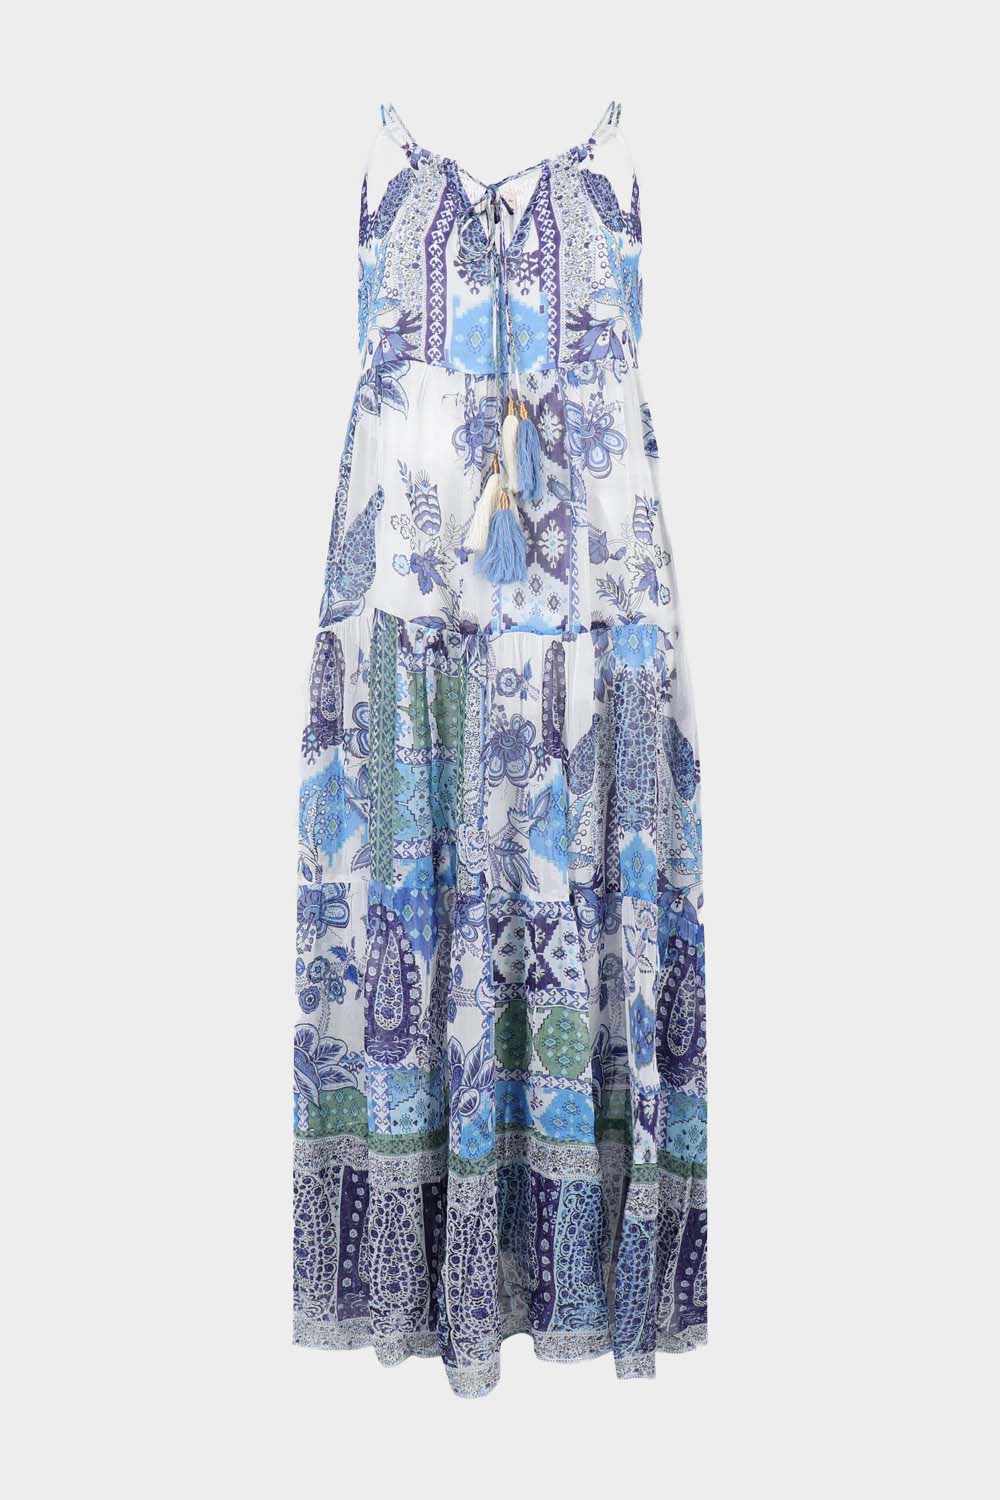 שמלת SAMARKAND לנשים הדפס אתני פרחוני RENE DERHY Vendome online | ונדום .